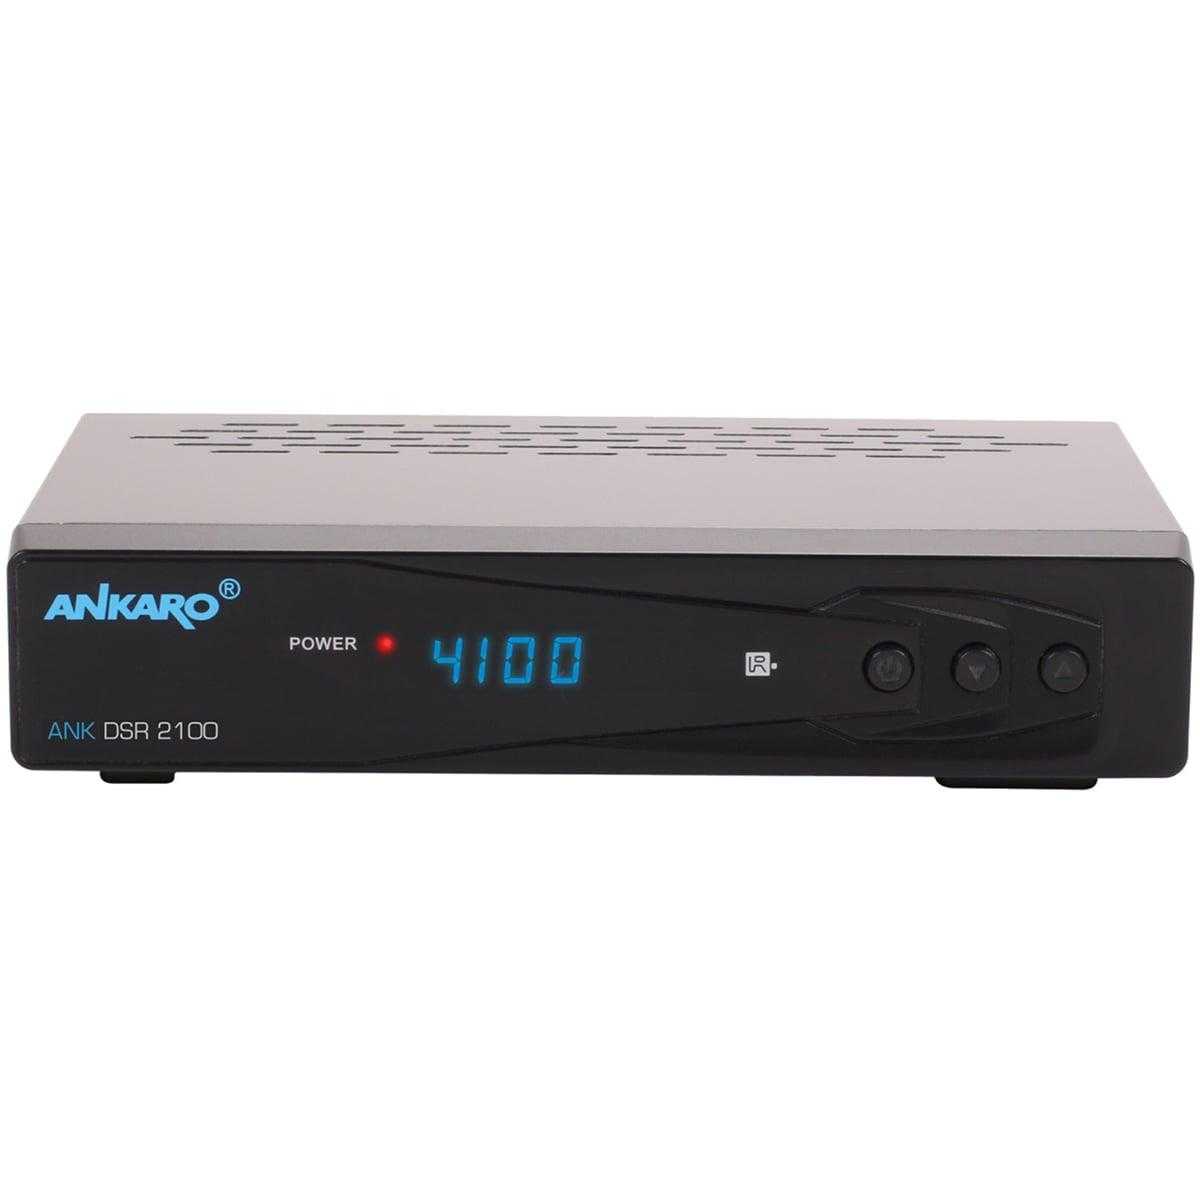 Ankaro ANK DSR 2100 Digitaler 1080p Full HD USB HDMI Scart DVB-S2 Satelliten Receiver Schwarz von Ankaro